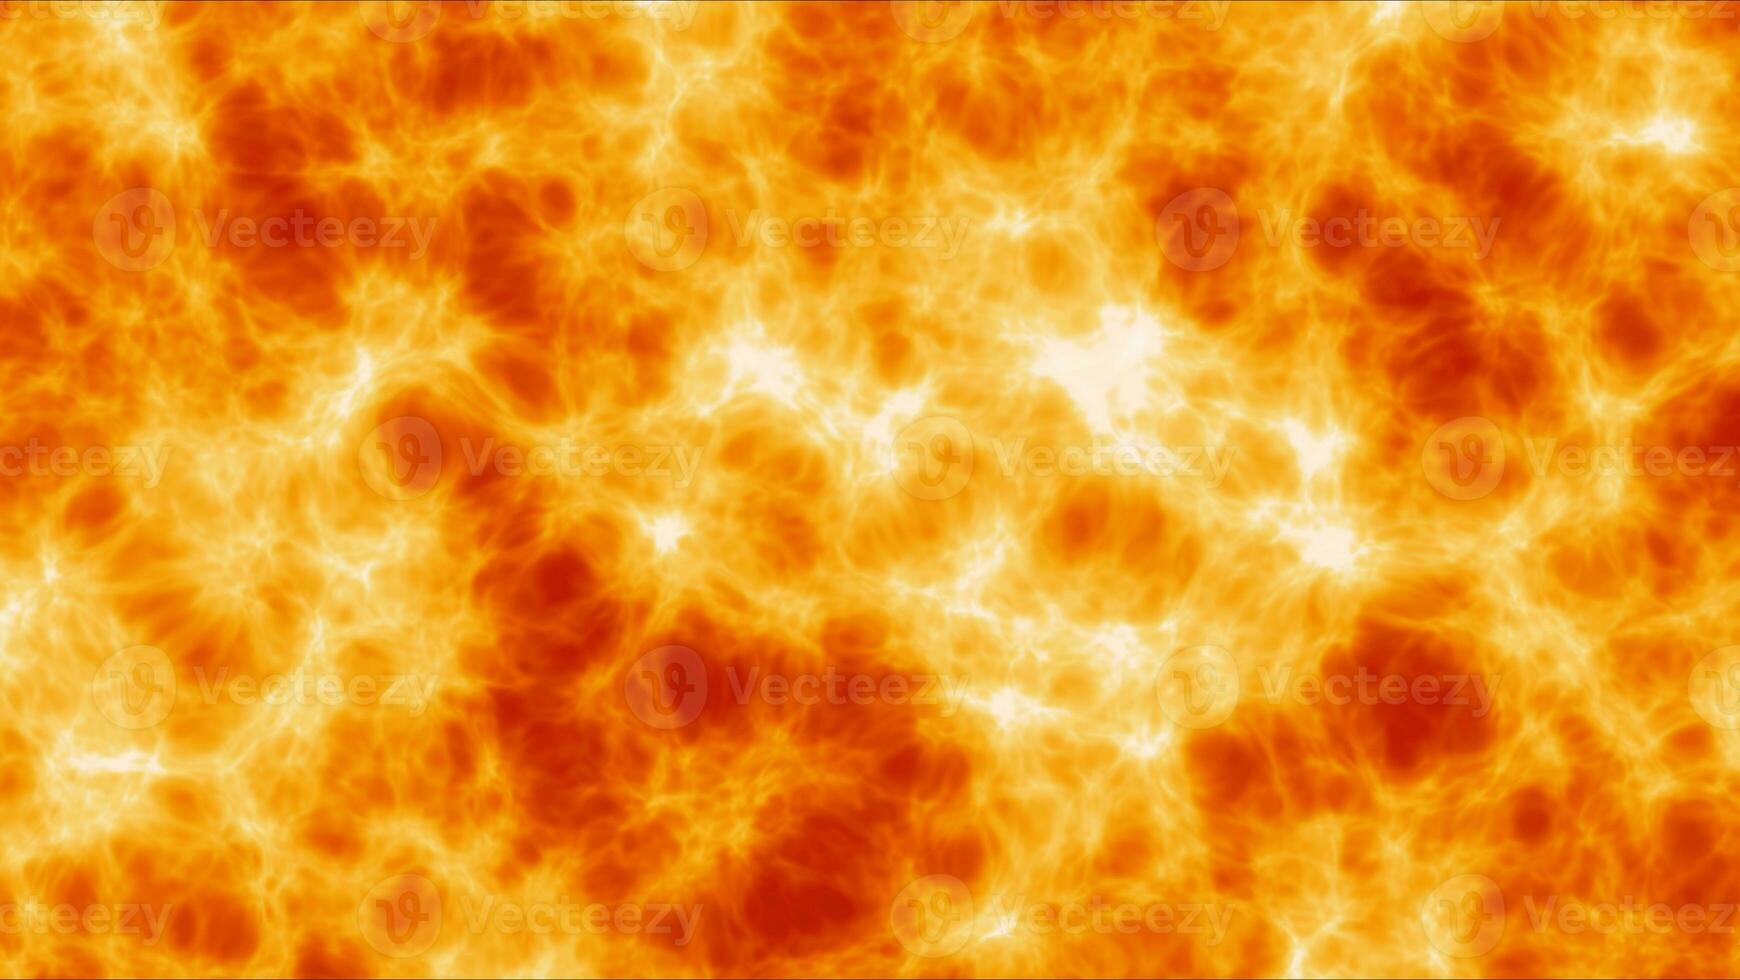 fogo e fumaça do chama efeito calor e Alto temperatura textura suave superfície plano de fundo2 foto